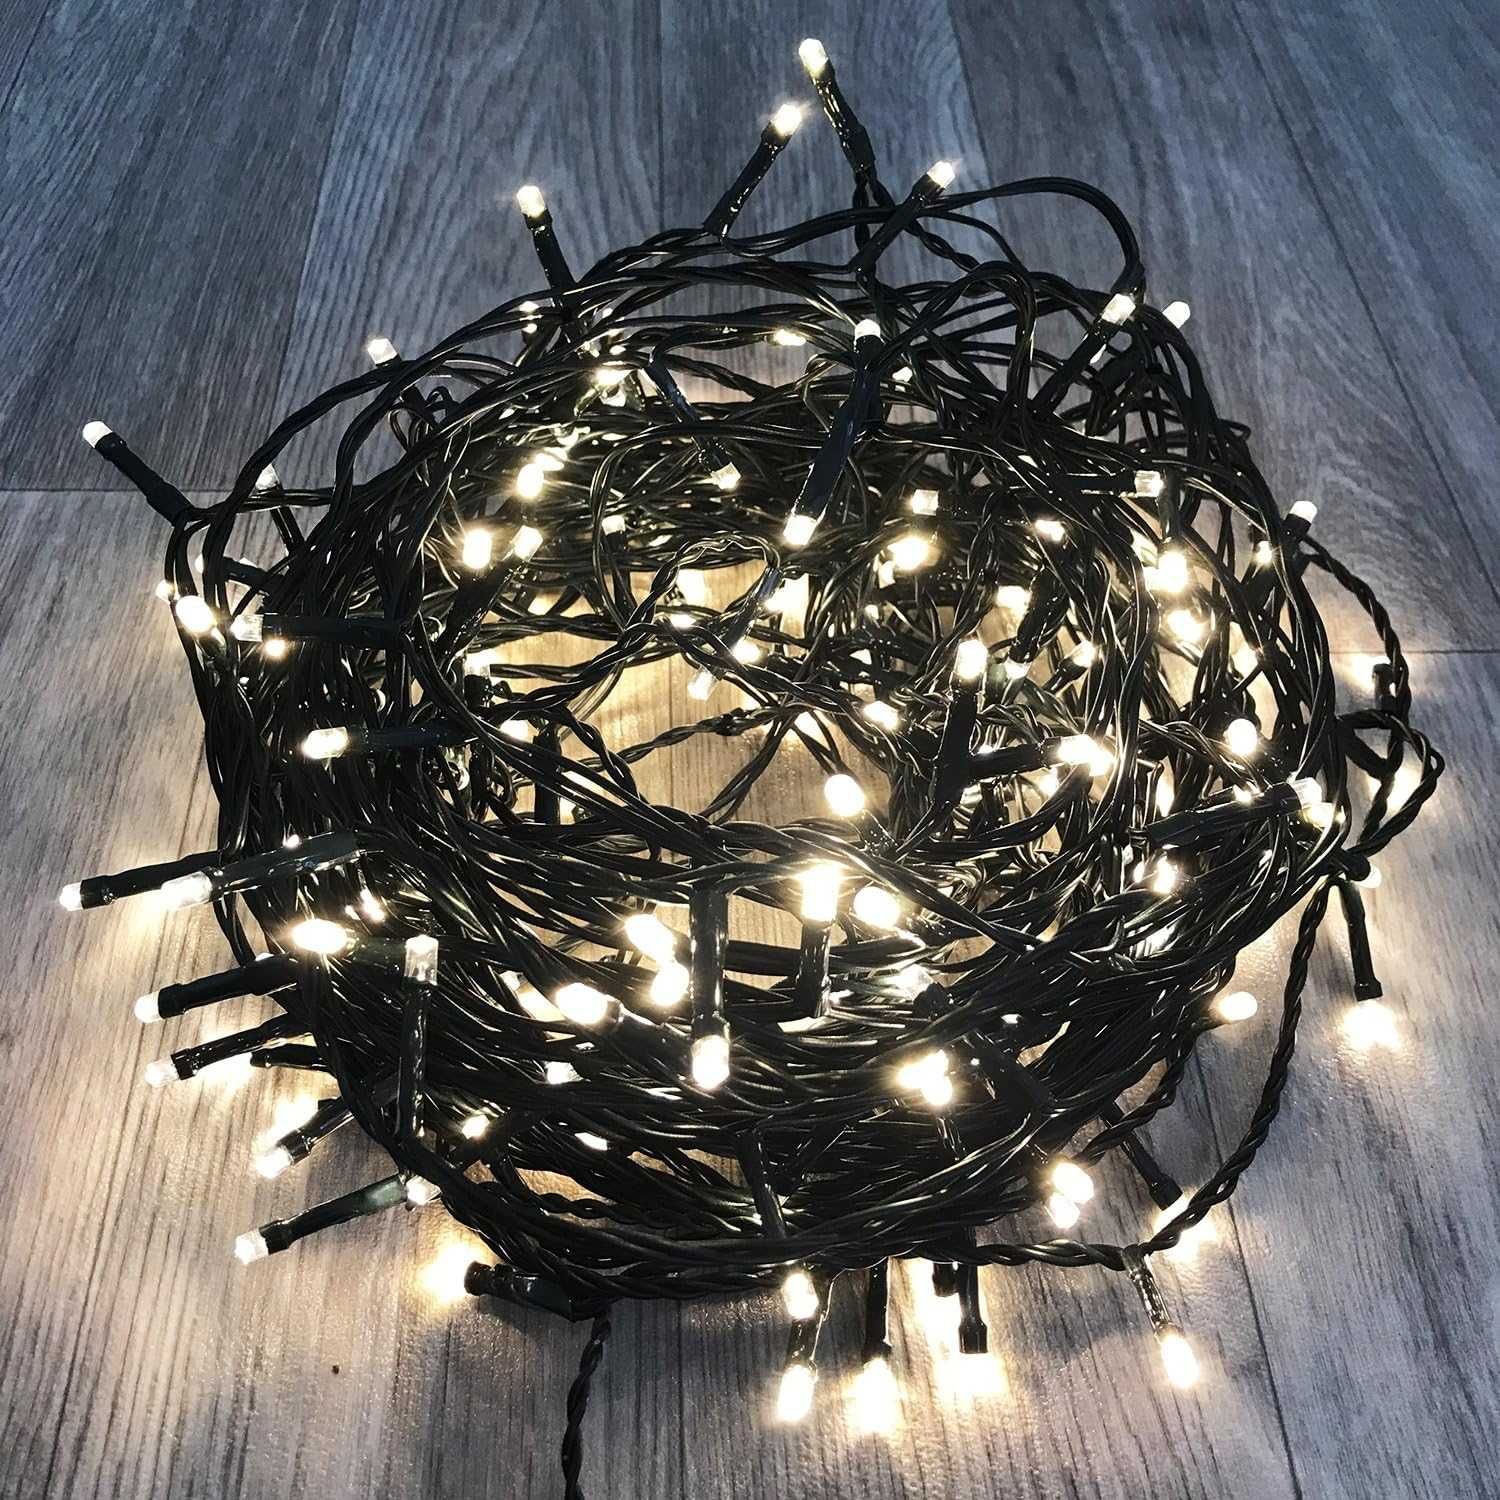 Łańcuch świetlny z 200 diodami LED, ciepła biel